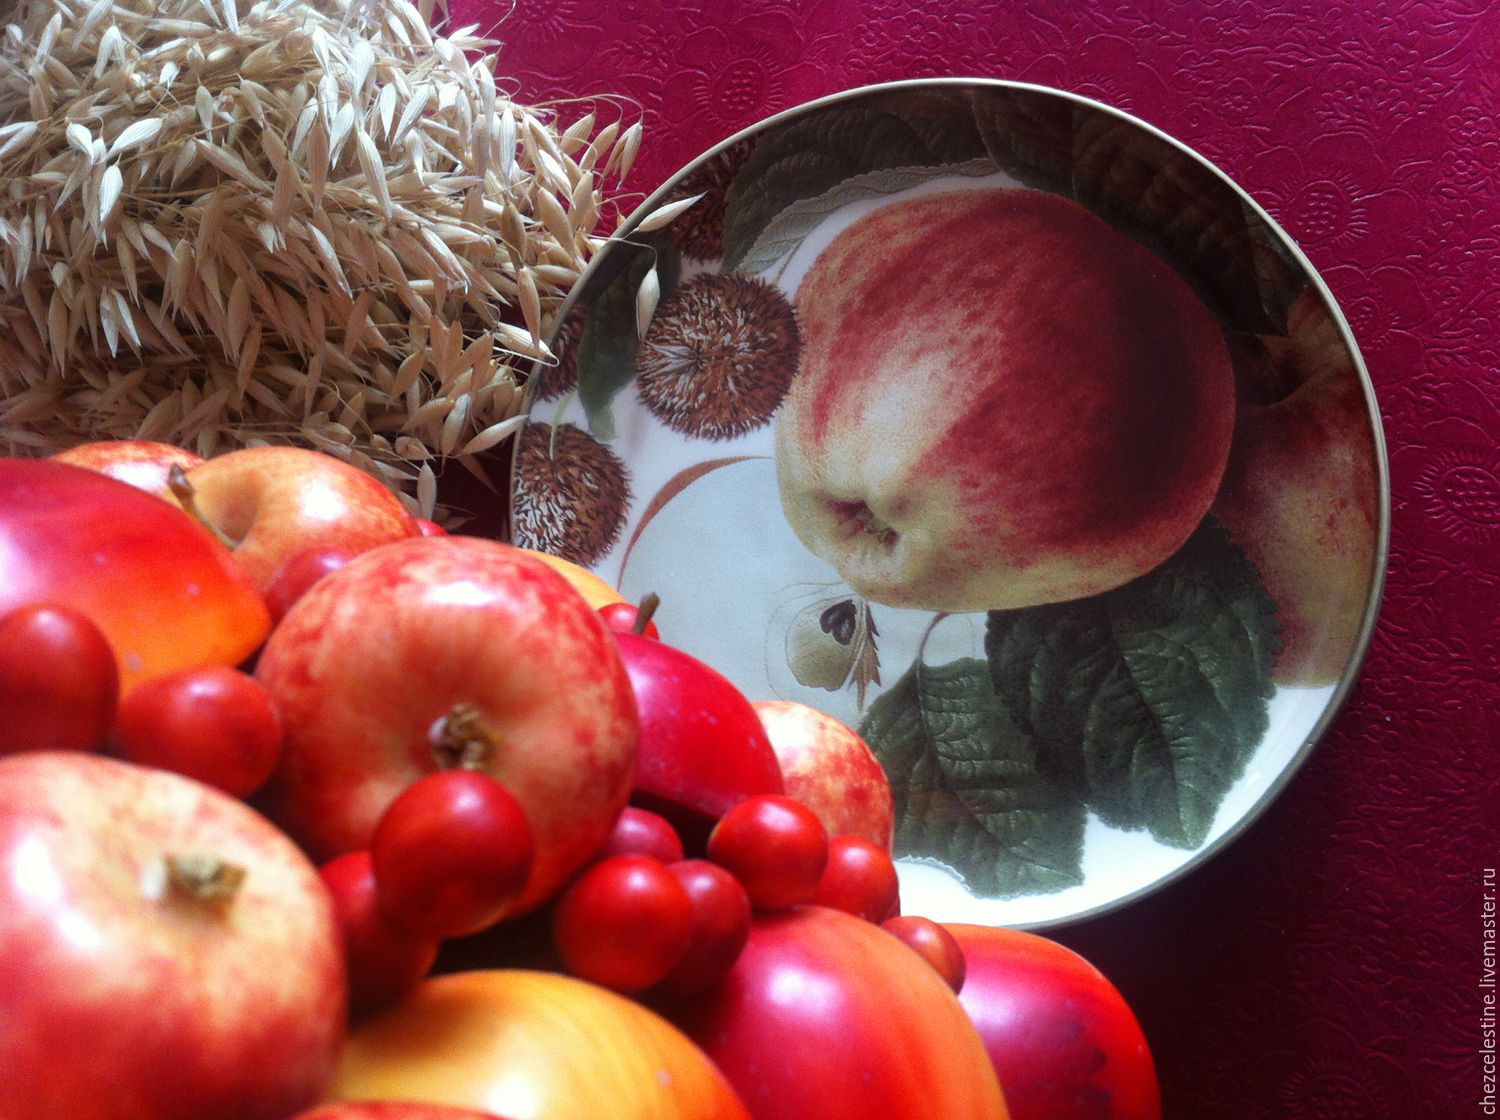 Запах яблок какой. Яблоко на тарелке. Яблочный аромат. Яблоки садовые на тарелке. Яблочко на тарелочке.